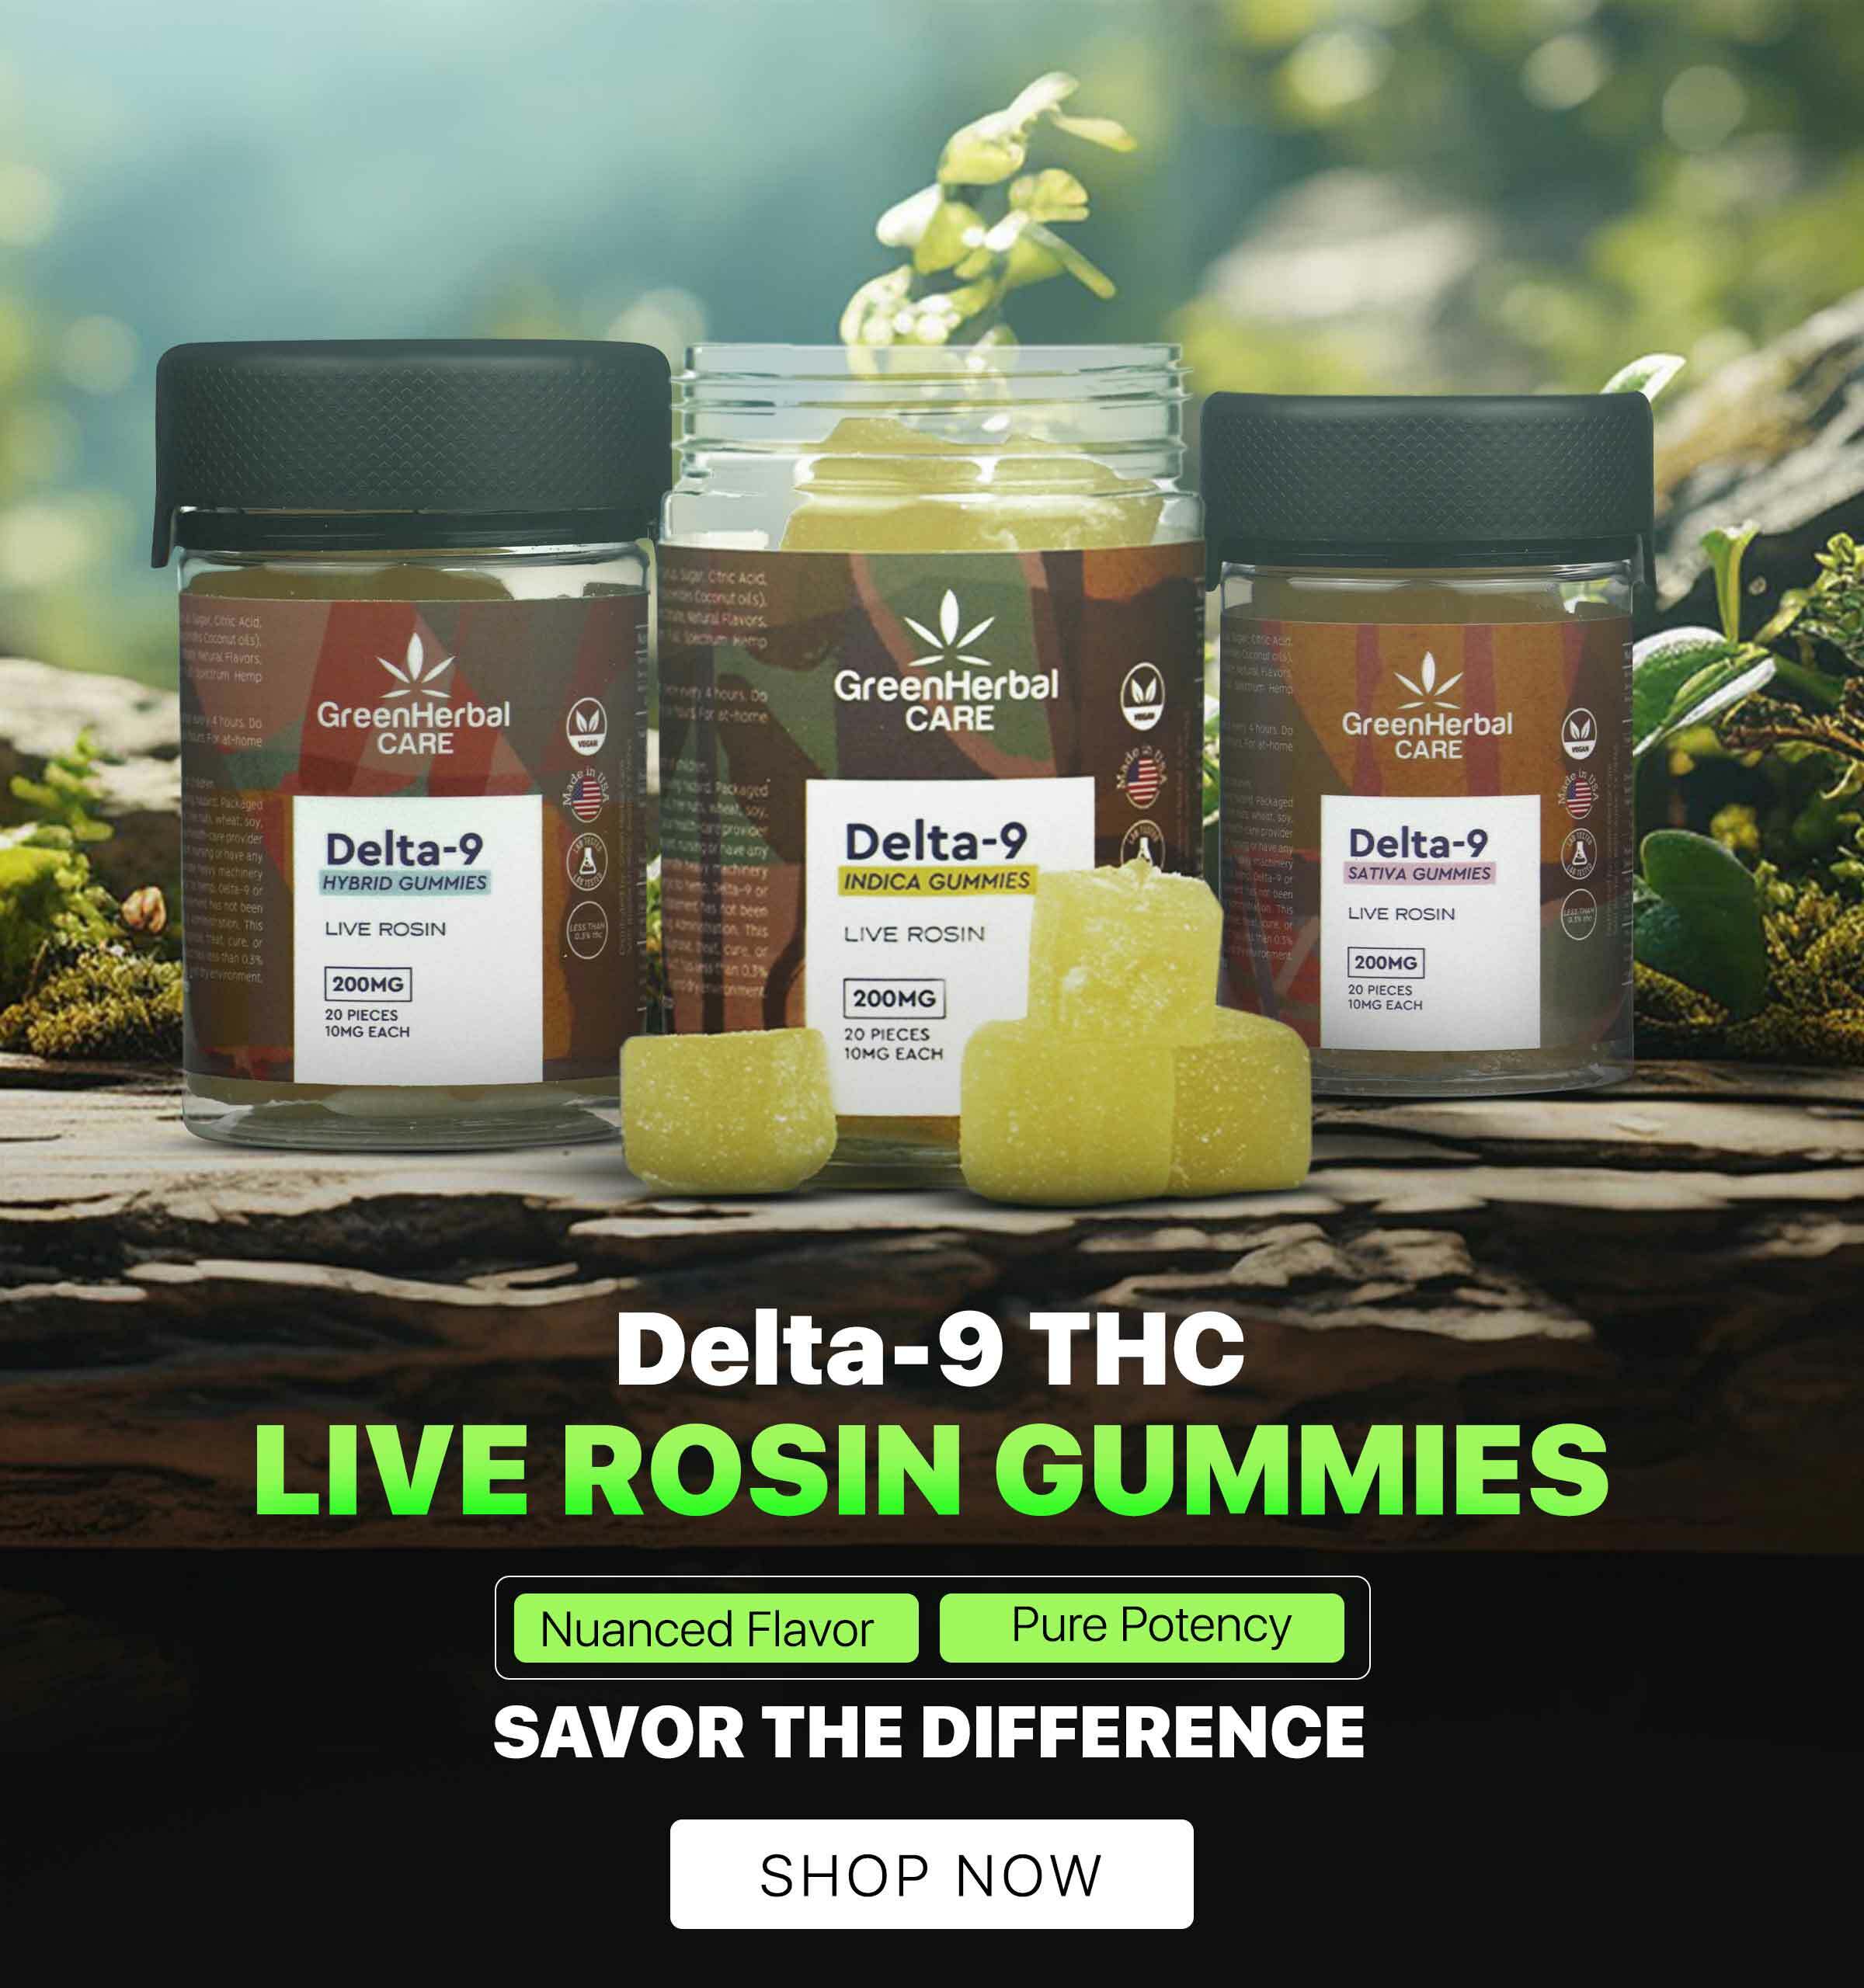 delta-9-thc-live-rosin-gummies-mobile-banner